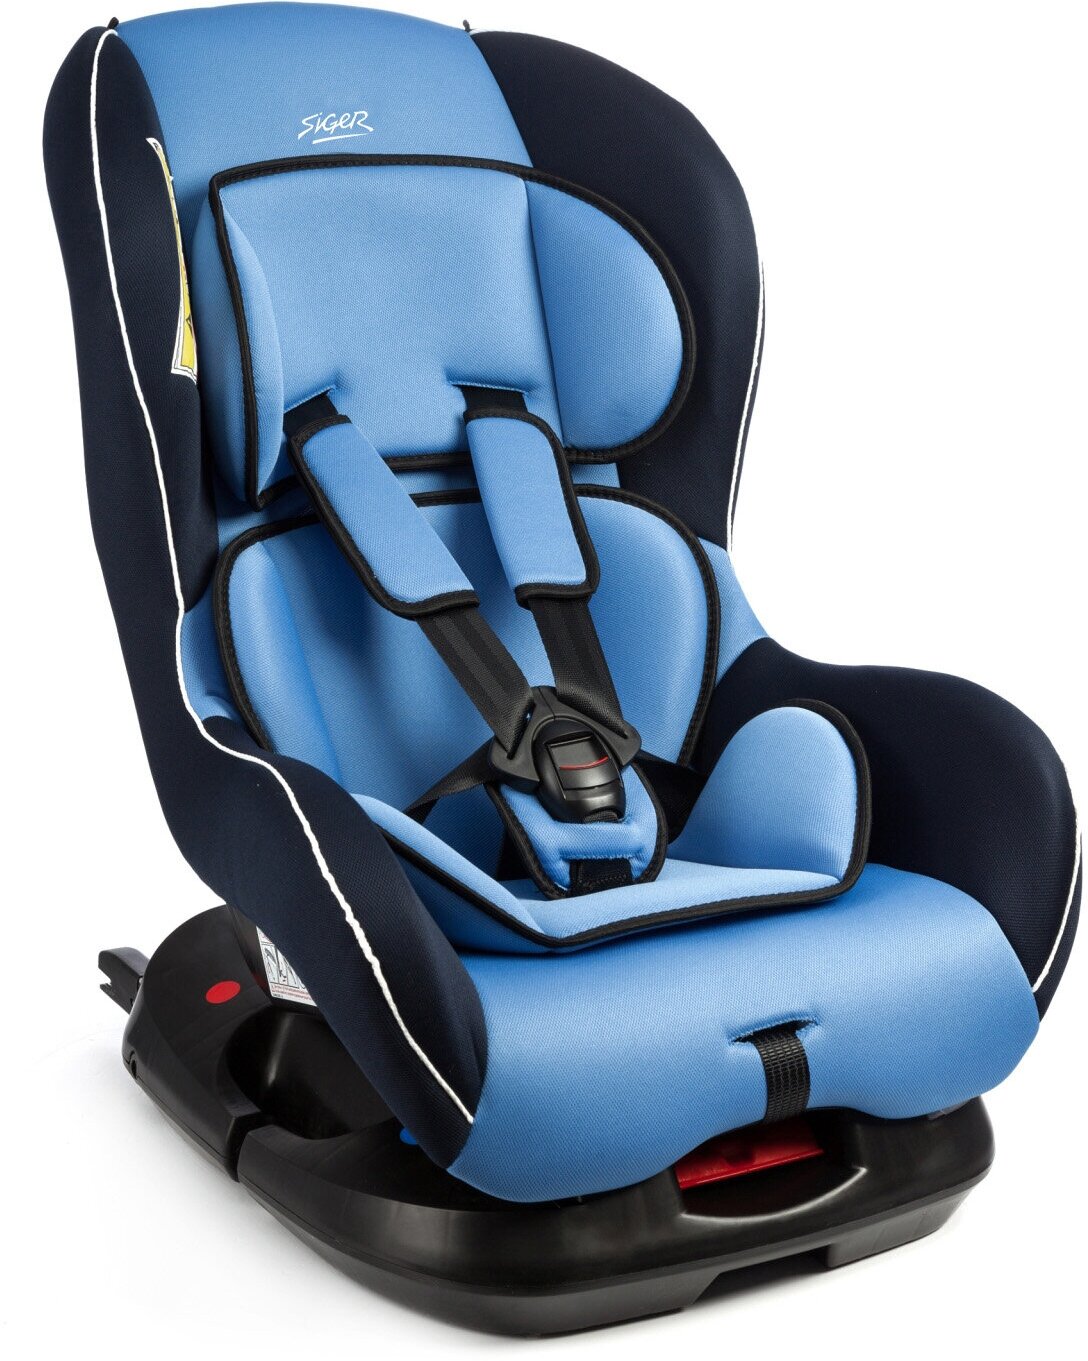 KRES0194 SIGER Кресло детское автомобильное группа 012 от 0 кг до 18 кг с креплением ISOFIX голубое наутилус SIGER KRES0194